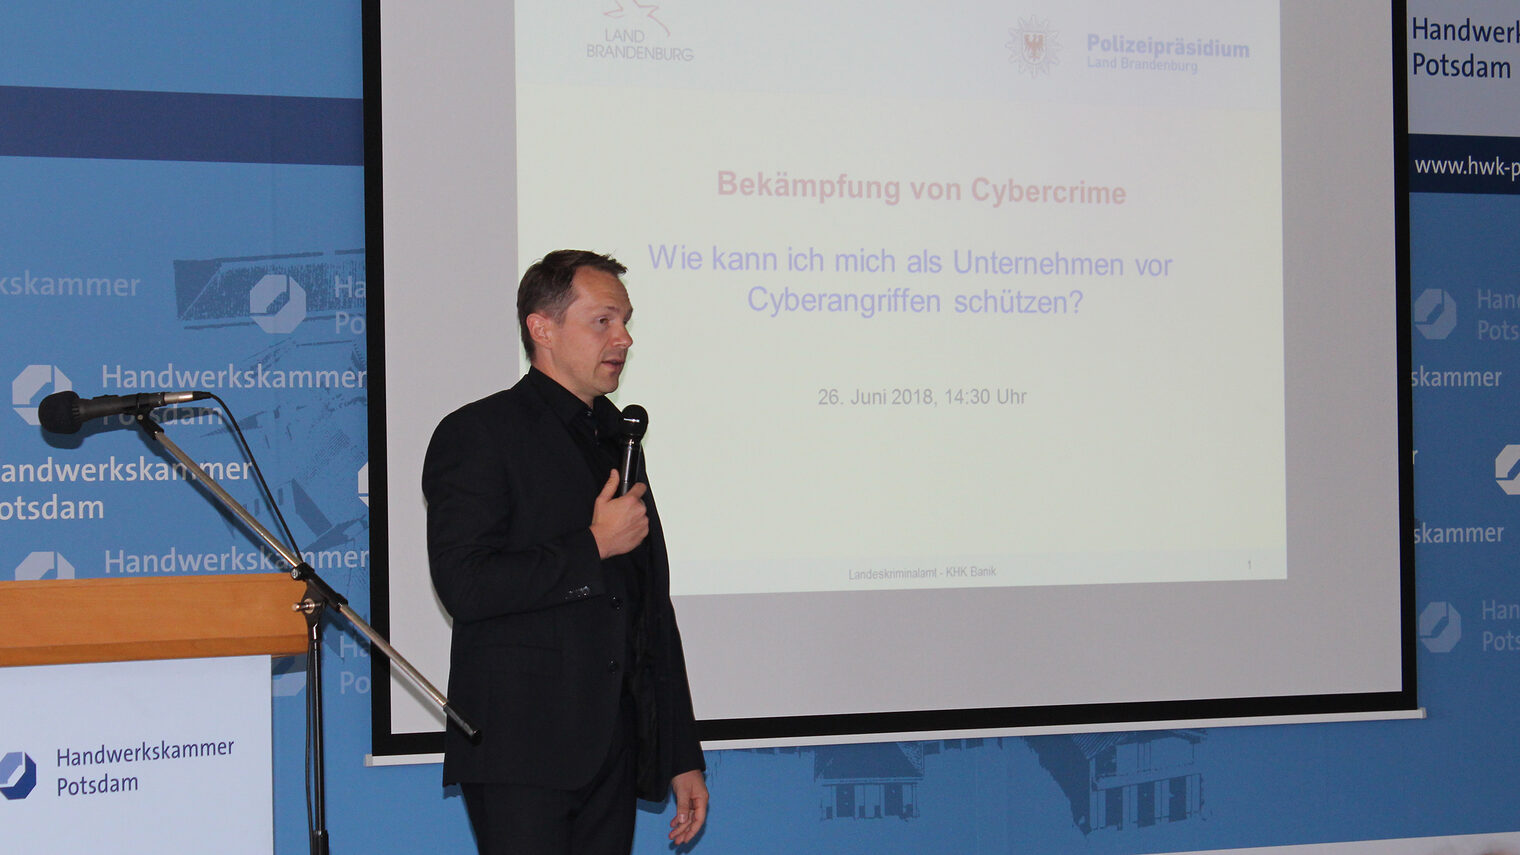 Marko Banik, Kriminalkommissar beim Landeskriminalamt Brandenburg und Leiter der Zentralen Ansprechstelle Cybercrime (ZAC)